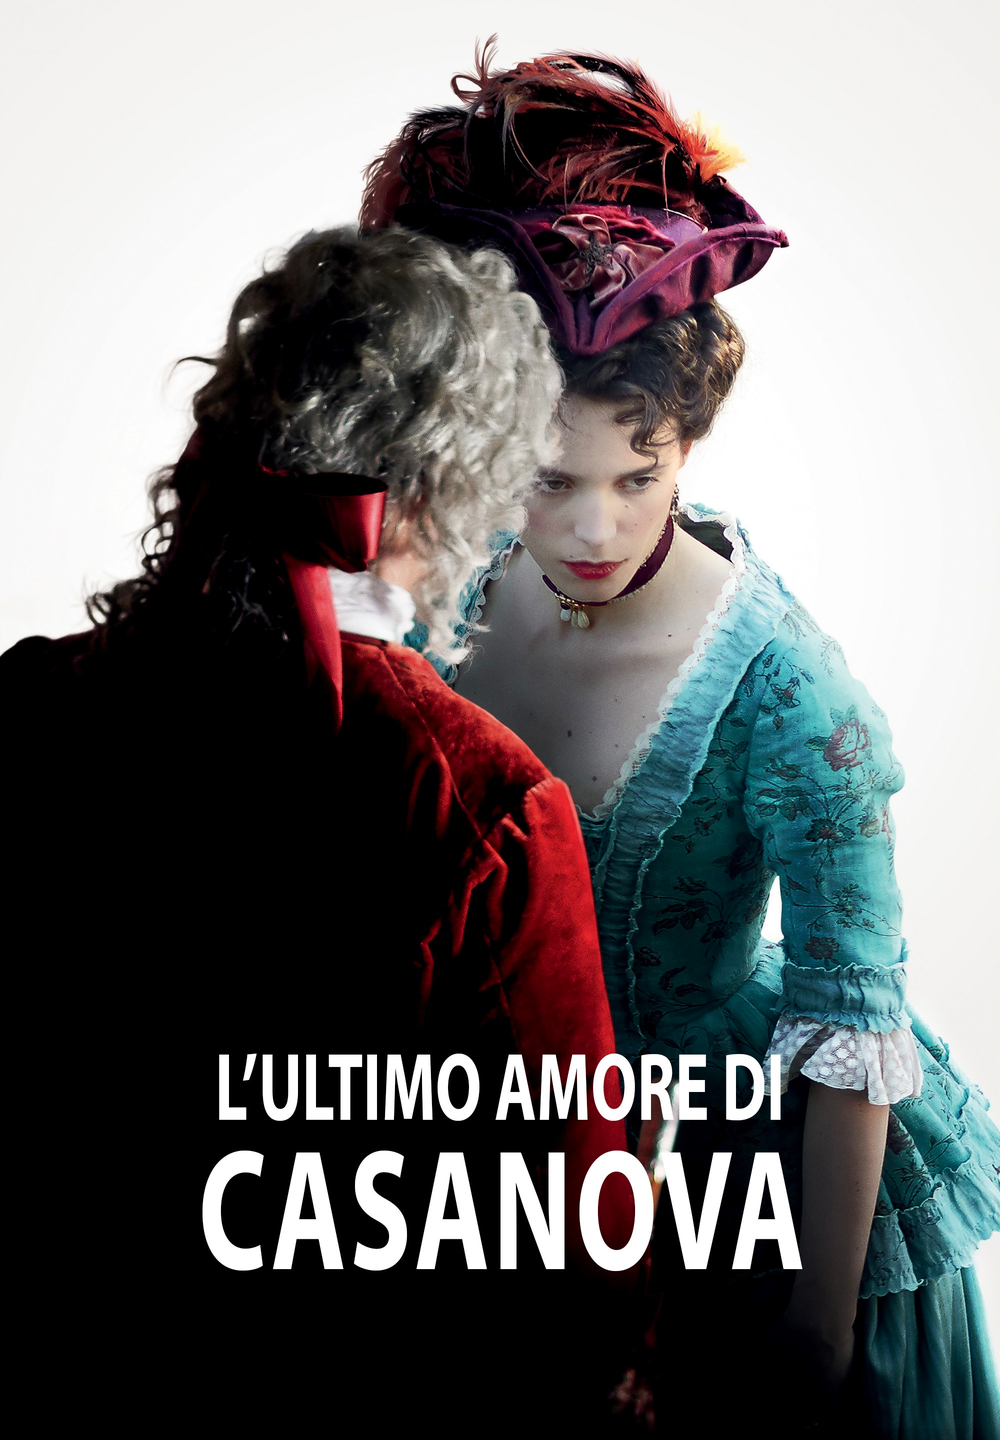 L’ultimo amore di Casanova [HD] (2019)